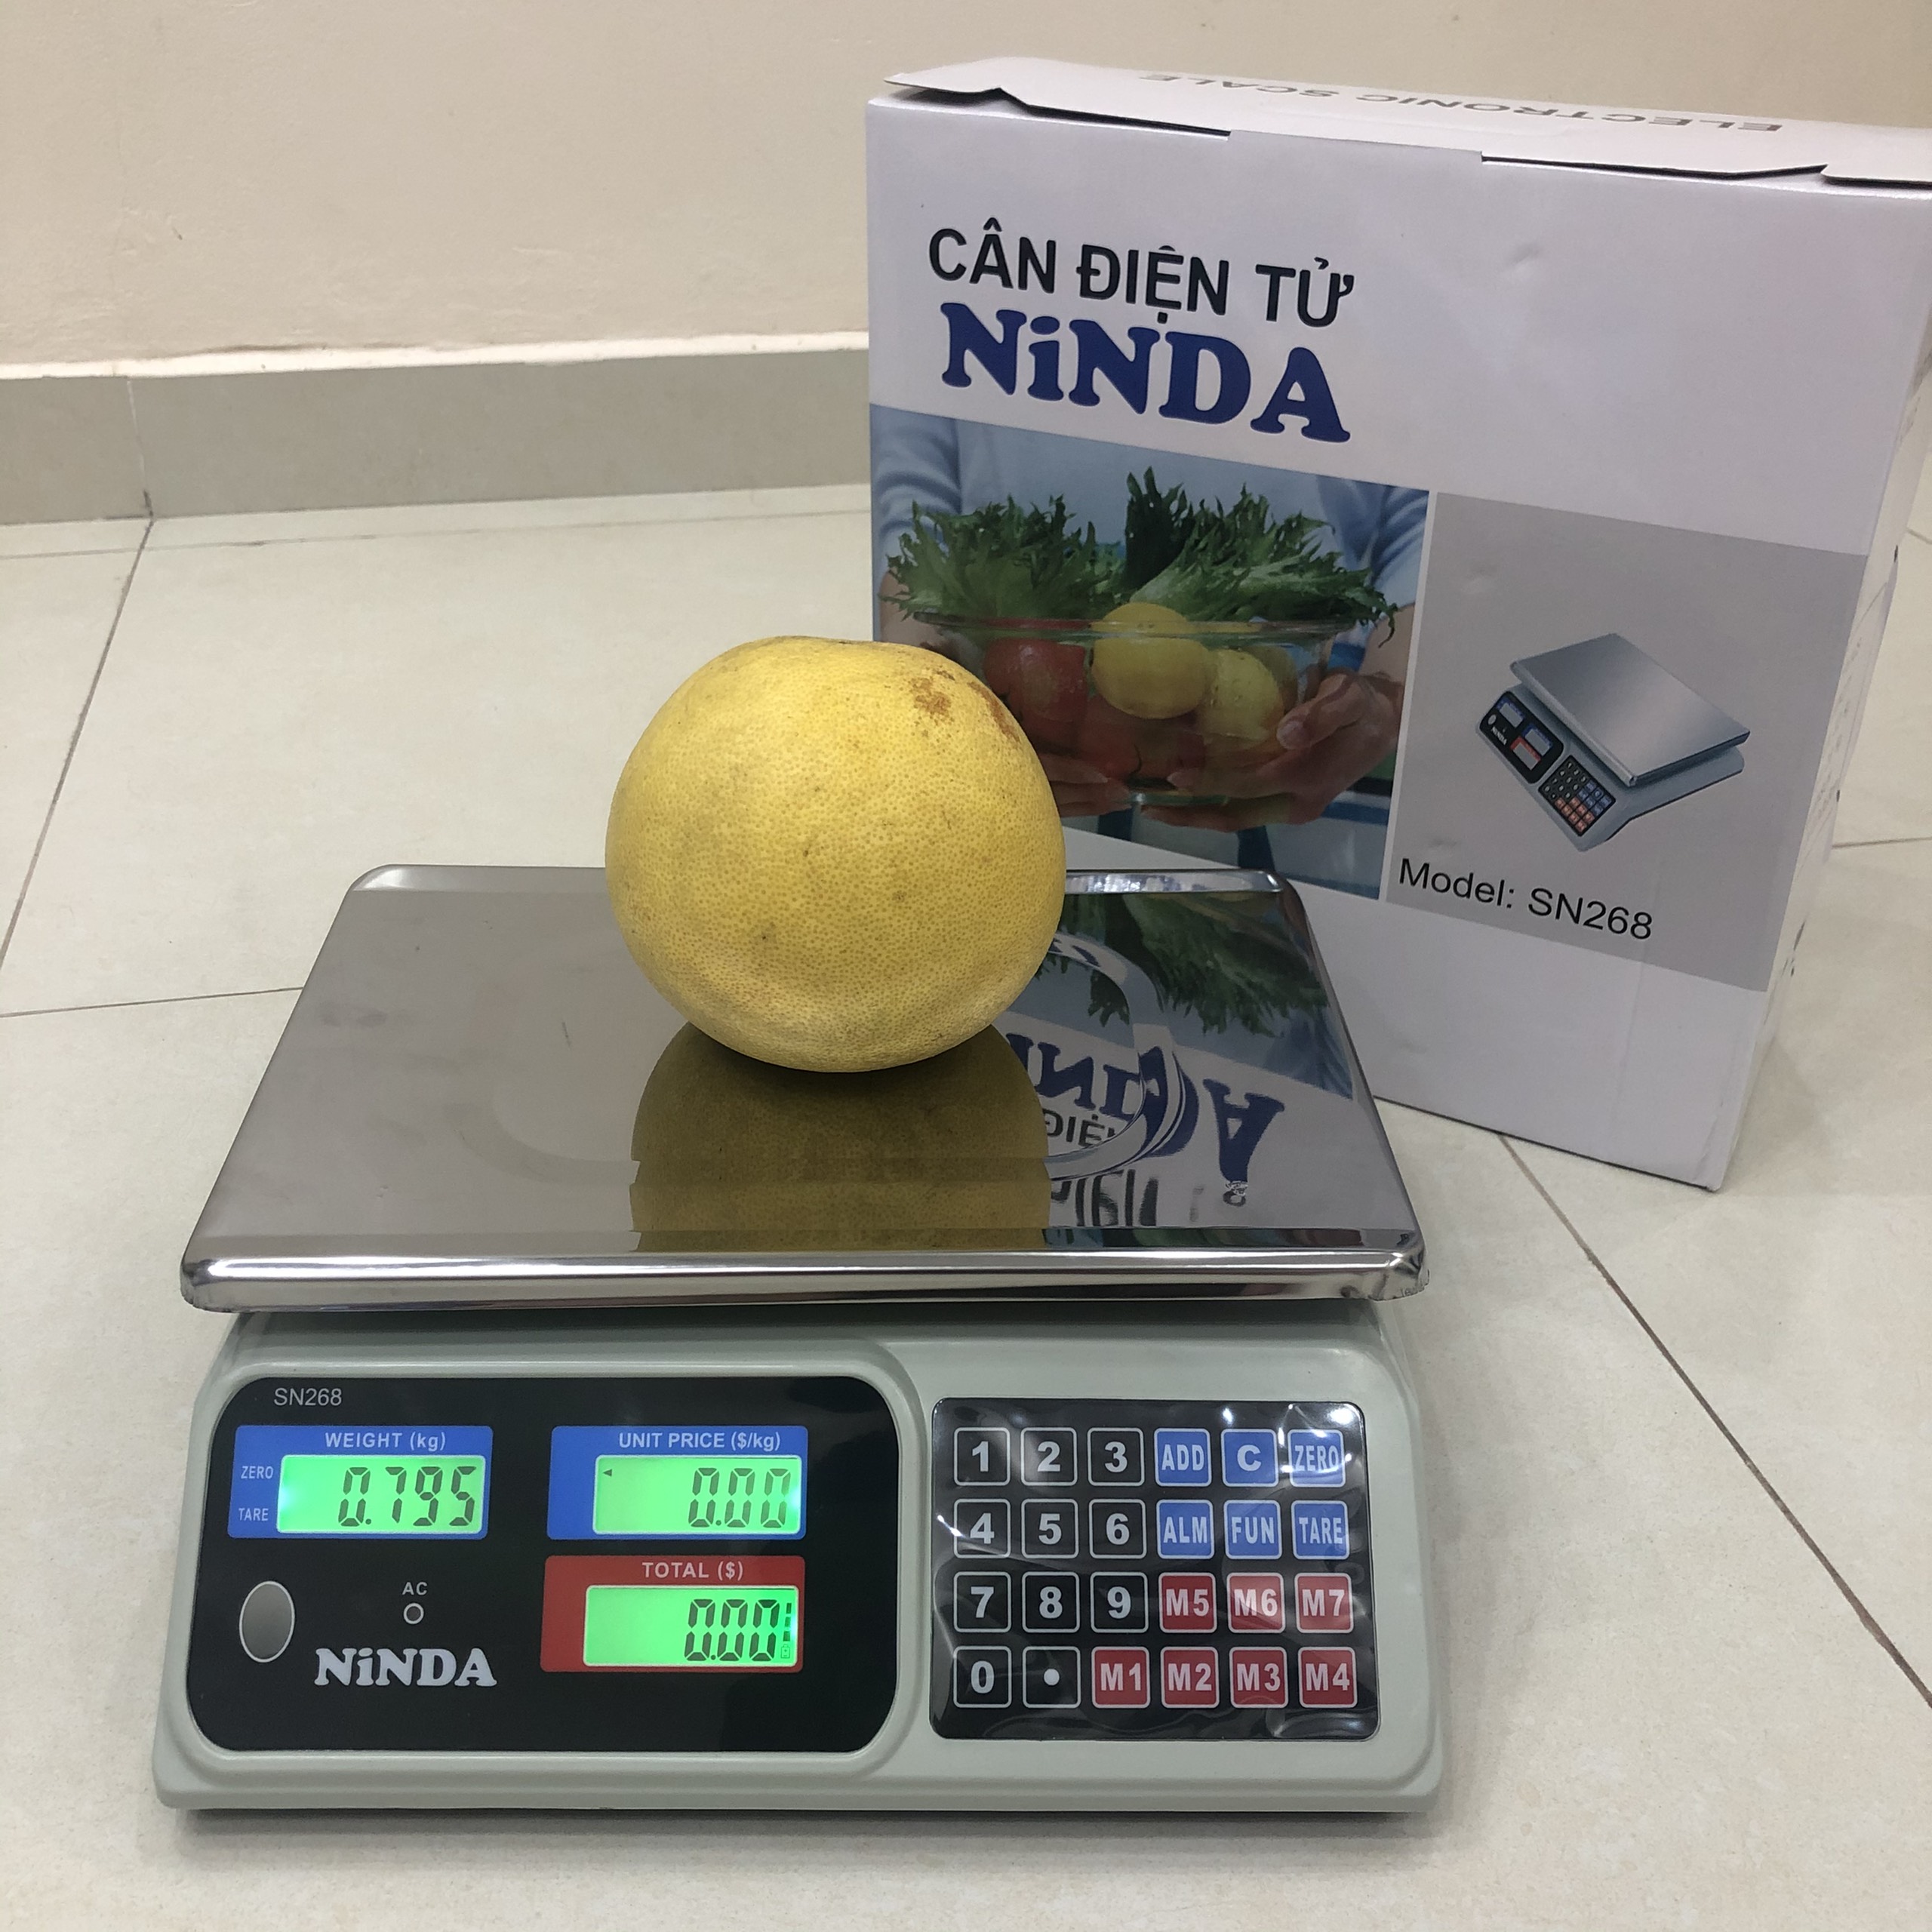 Cân điện tử 30kg Ninda, cân tính giá hoa quả thực phẩm sử dụng cho chuỗi siêu thị, cửa hàng trái cây, rau quả, thủy hải sản